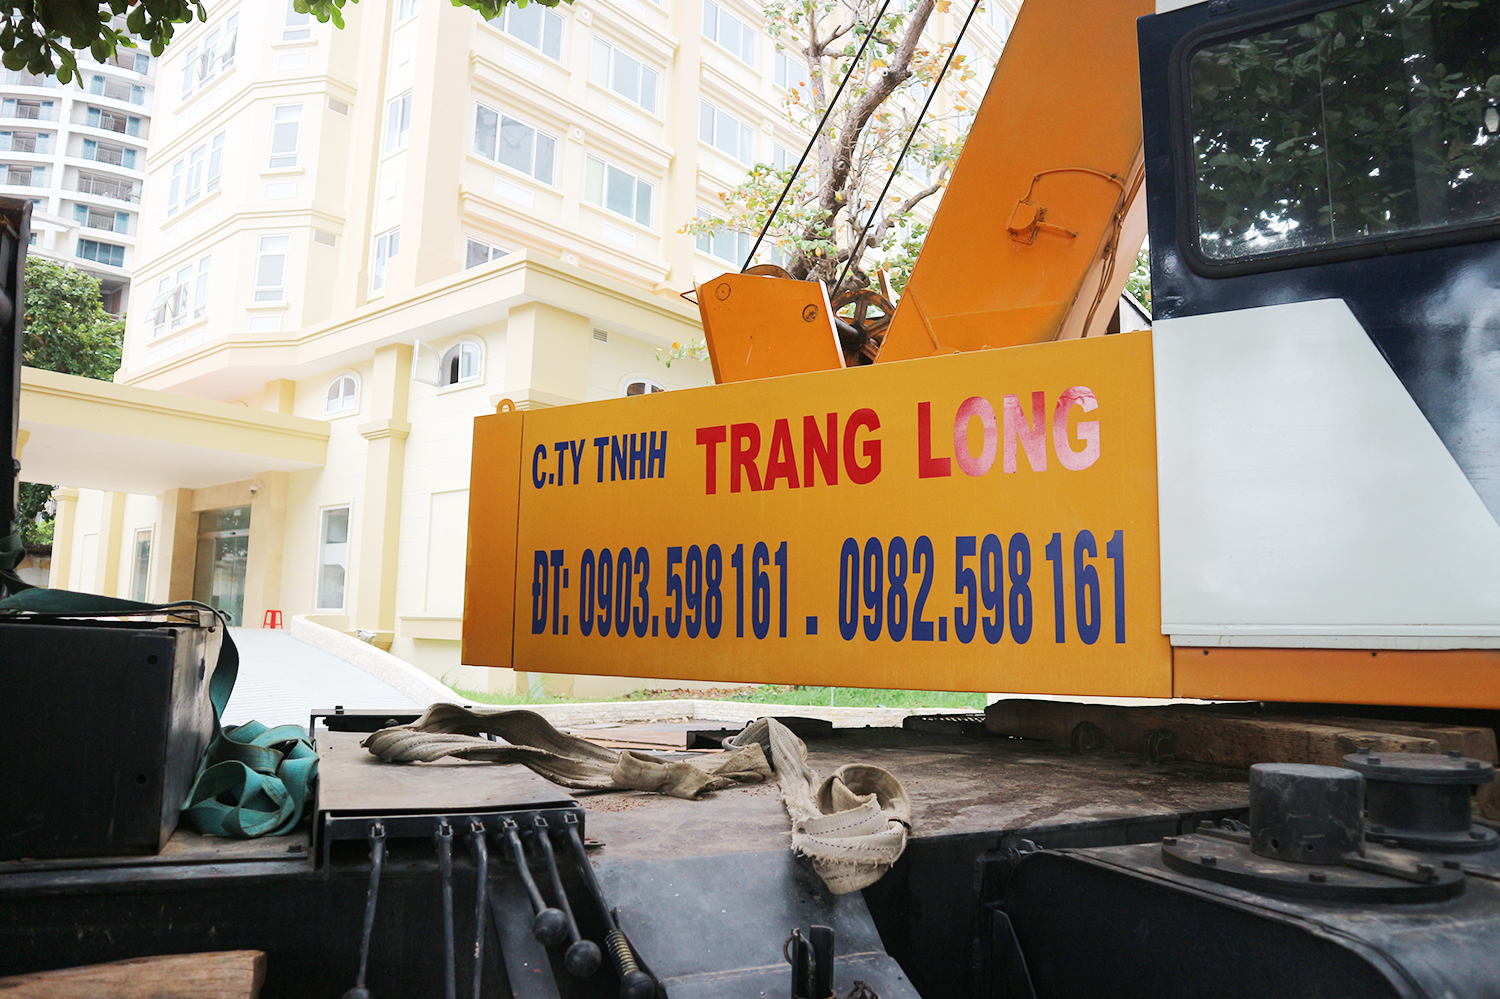 Về công ty Trang Long